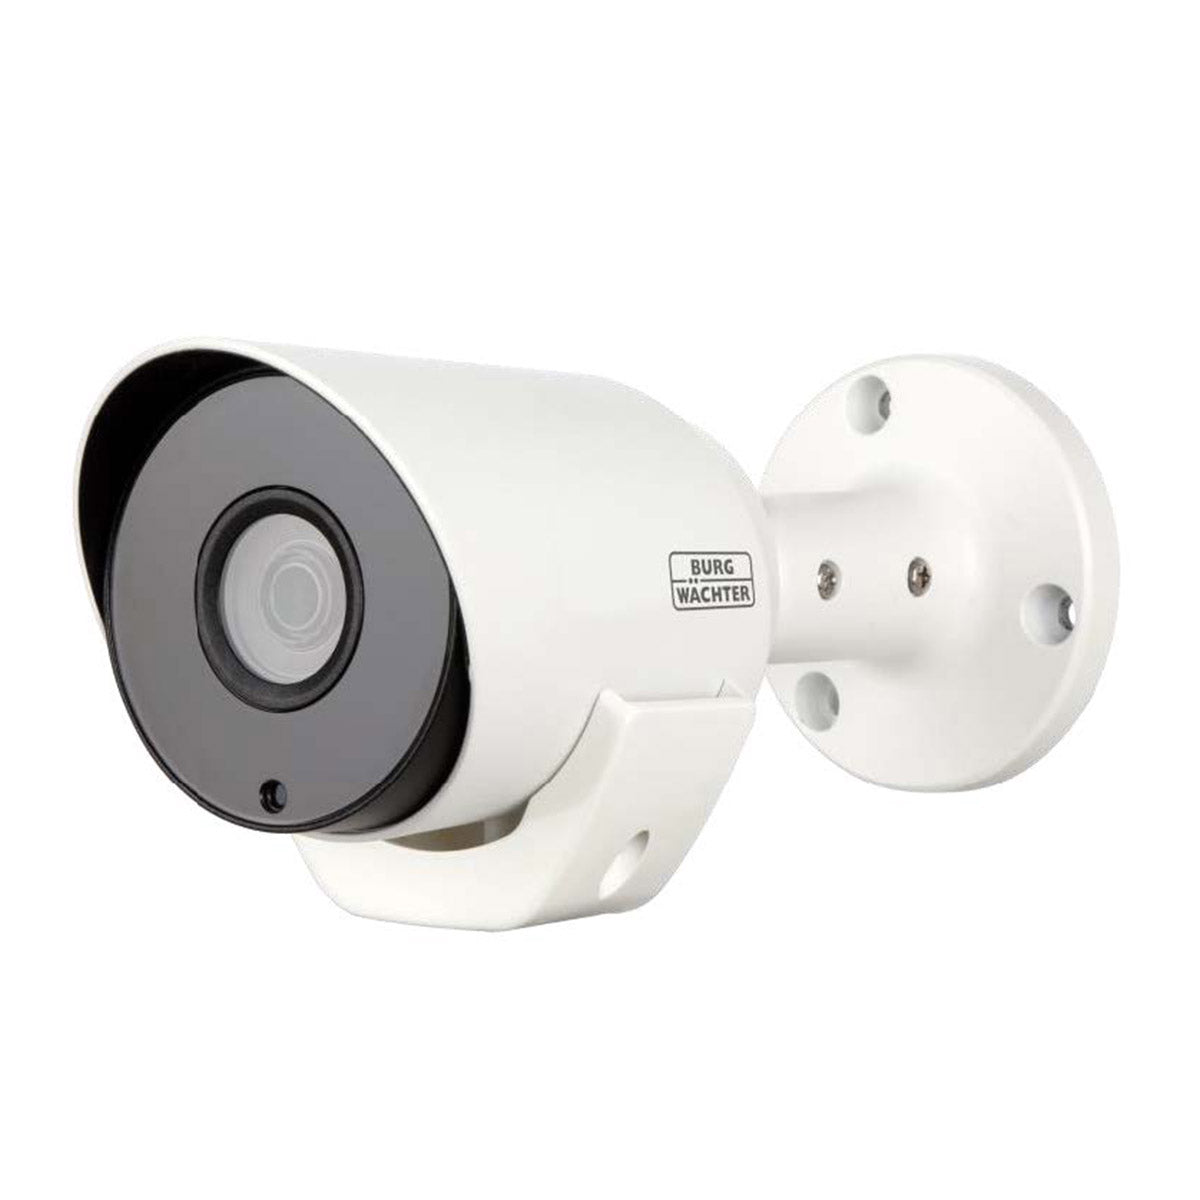 BURG-GUARD Multinorm und CCTV Kameras